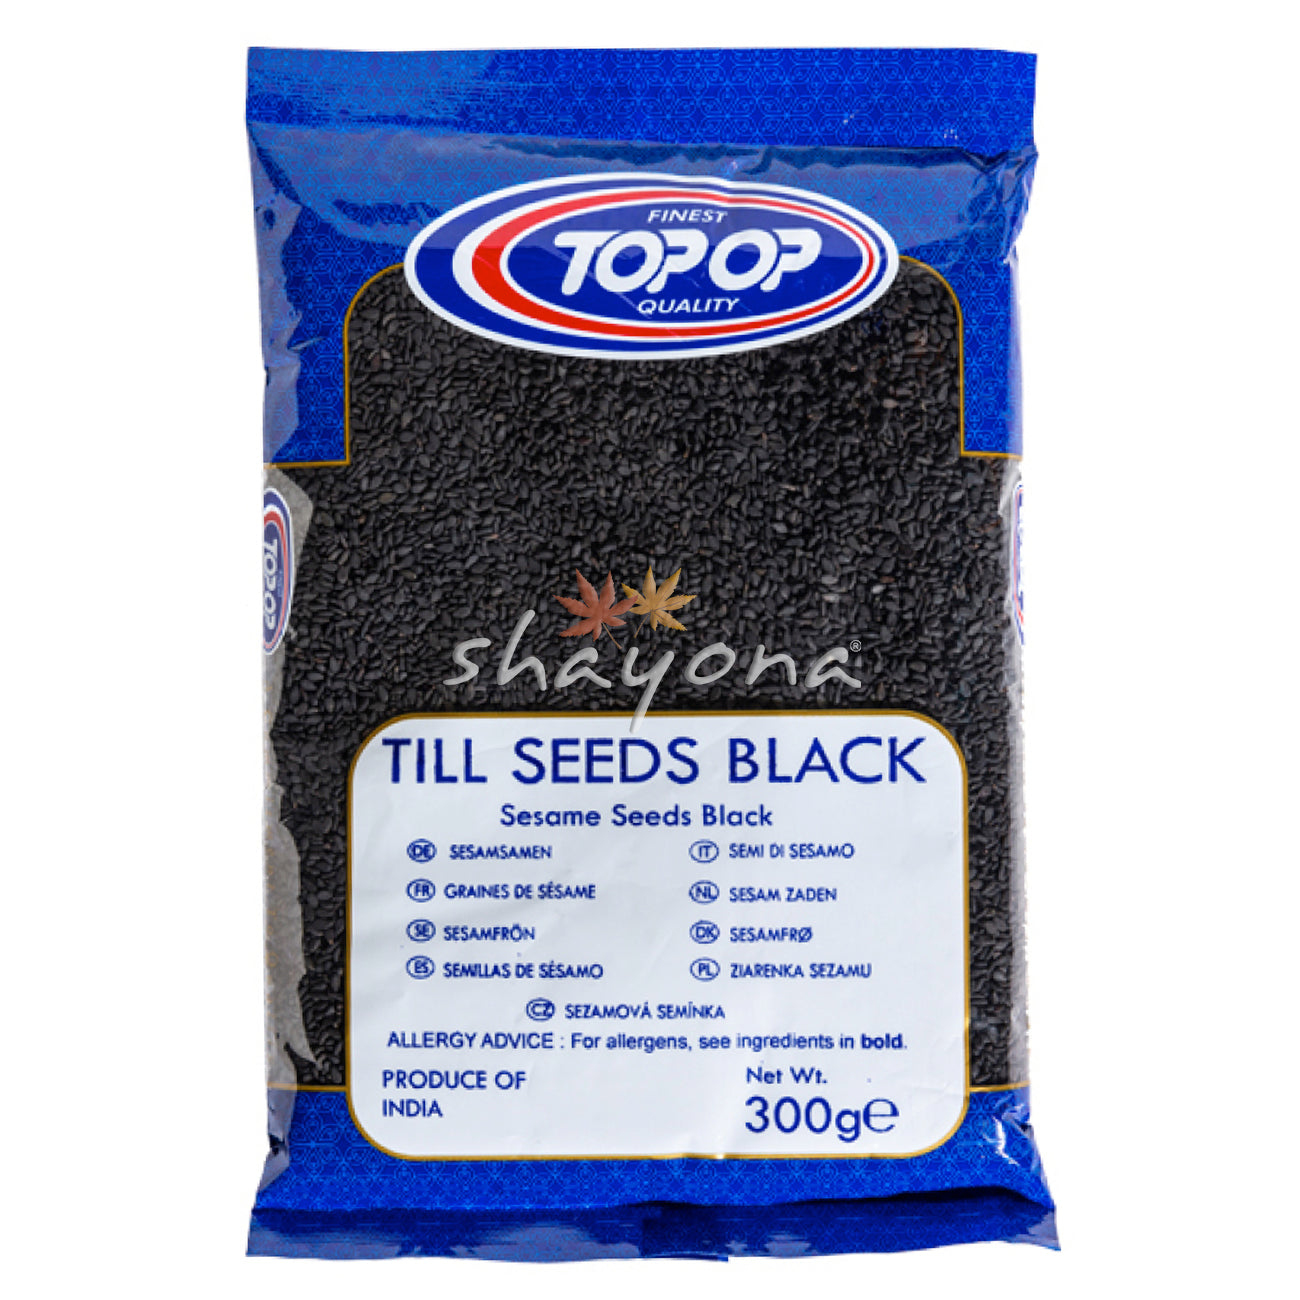 TopOp Till Seeds Black